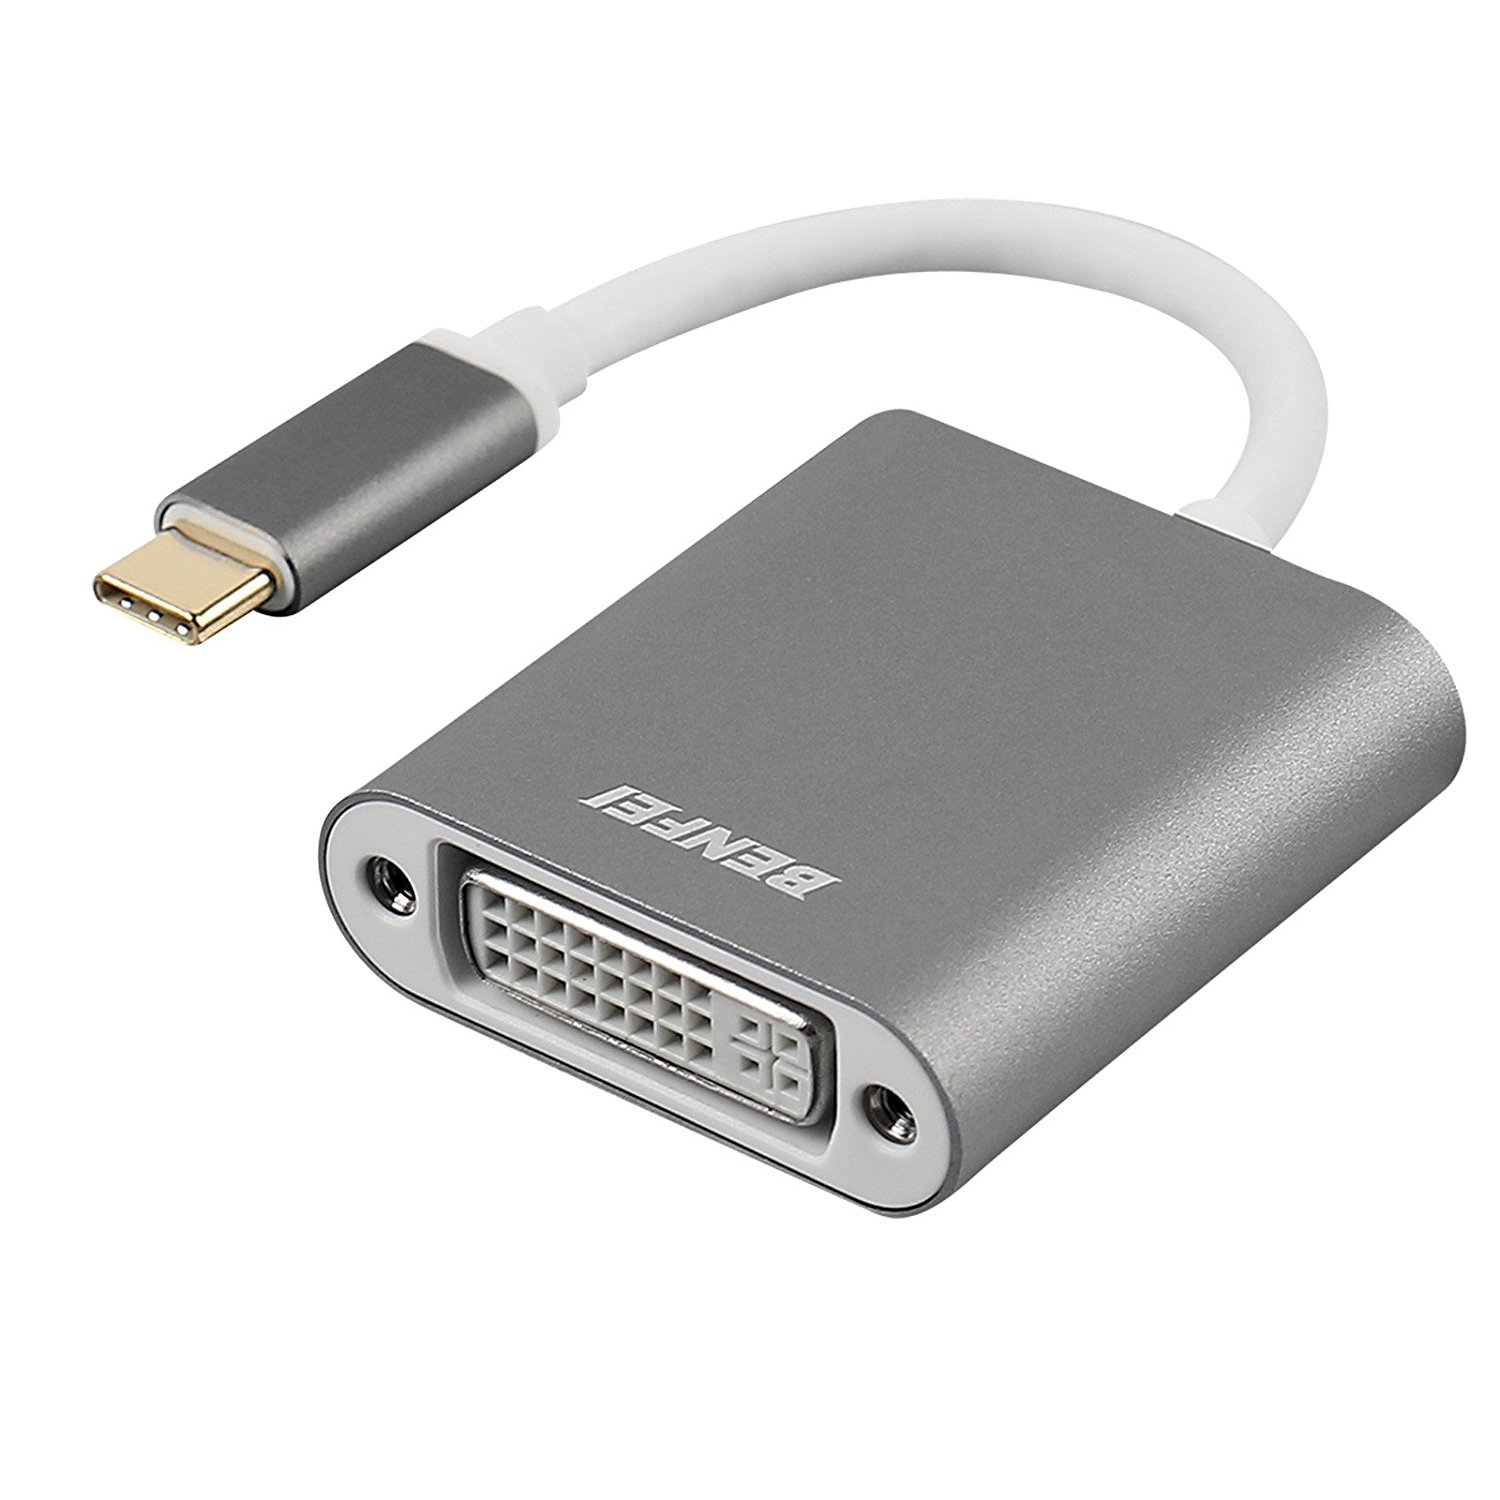 Adaptador USB tipo C (Thunderbolt 3) a DVI, adaptador USB 3.1 de Benfei (USB-C) a DVI-D Convertidor de macho a hembra para Apple MacBook